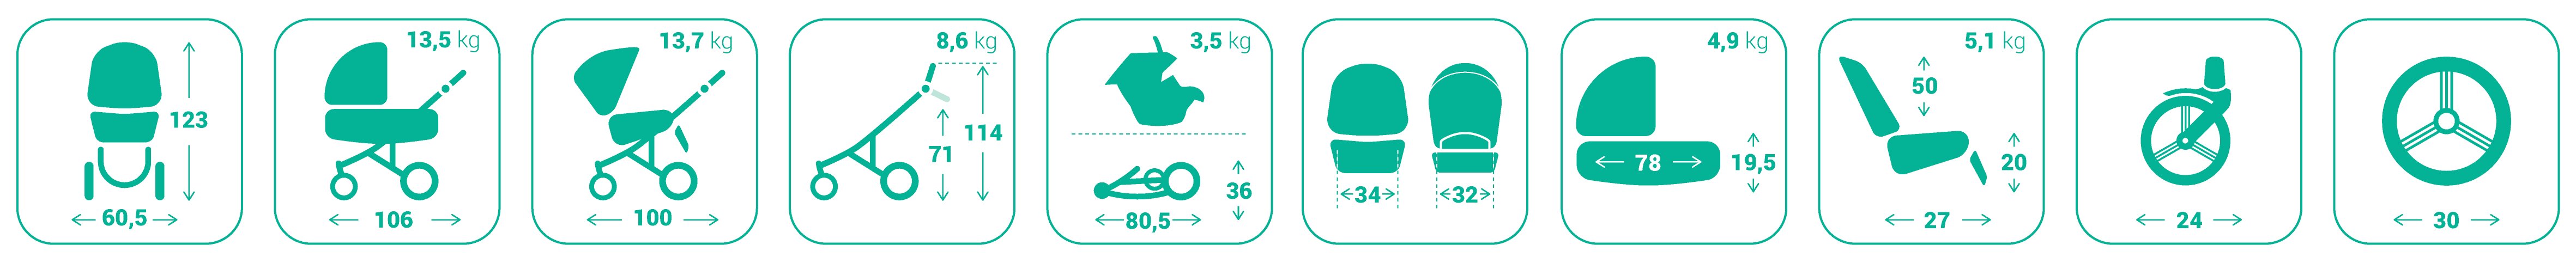 Размеры и вес детской коляски Бебетто Лука